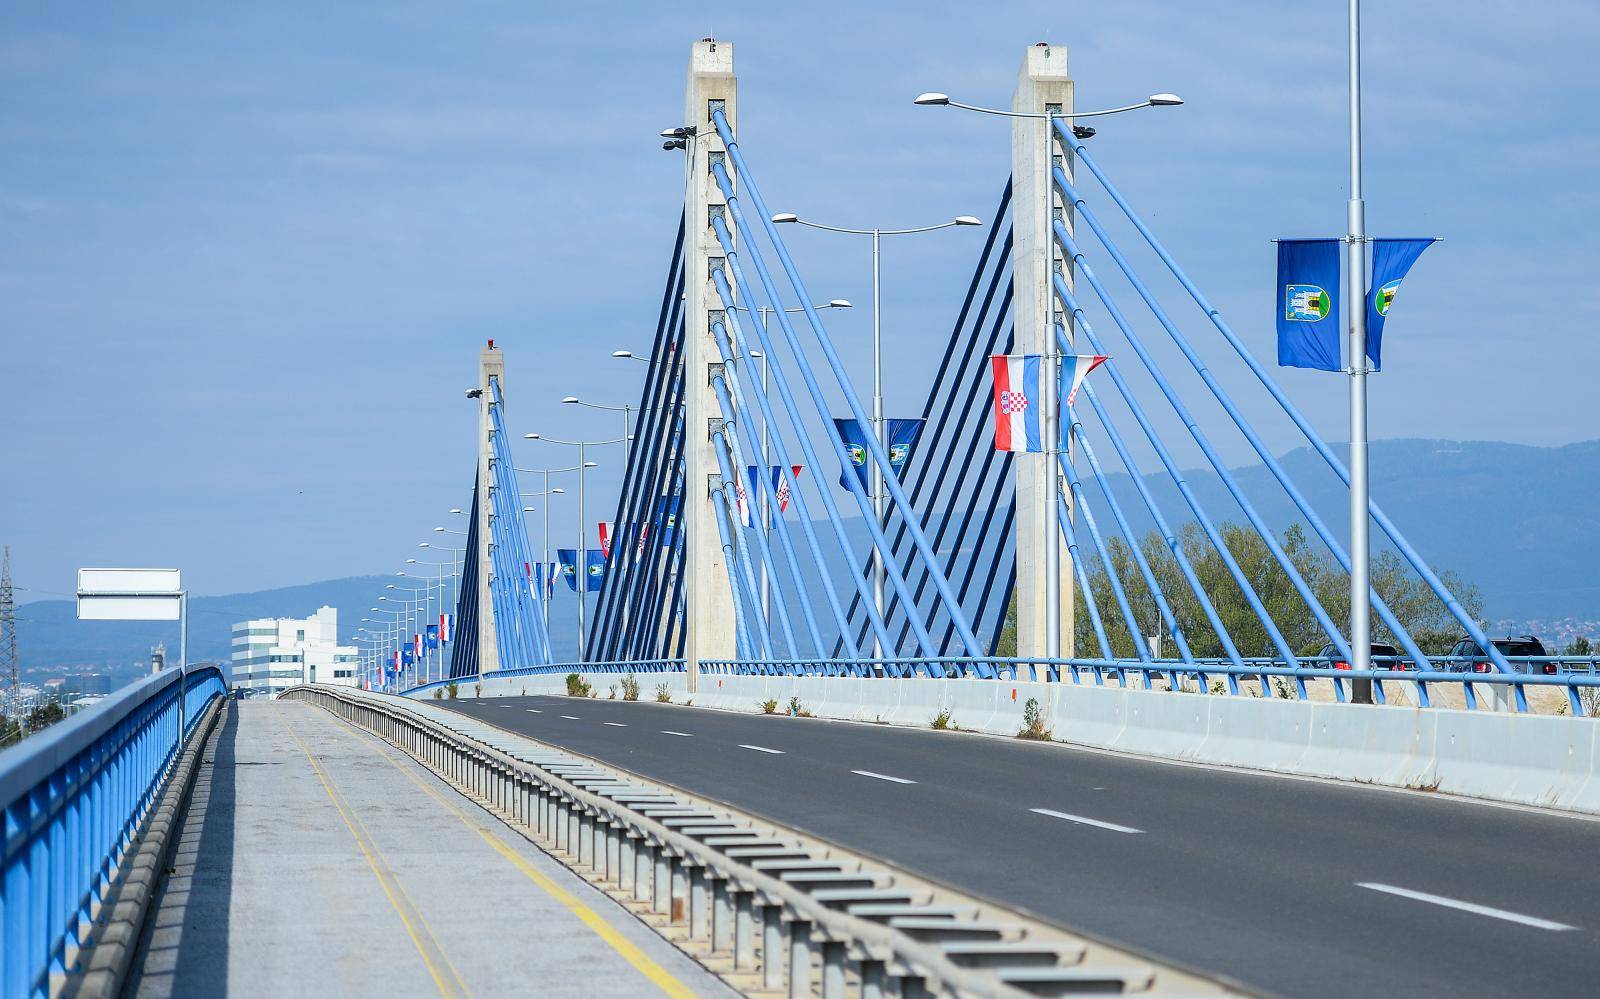 Zagreb: Nogostup i biciklistiÄka staza na Domovinskom mostu prepune su kvrga